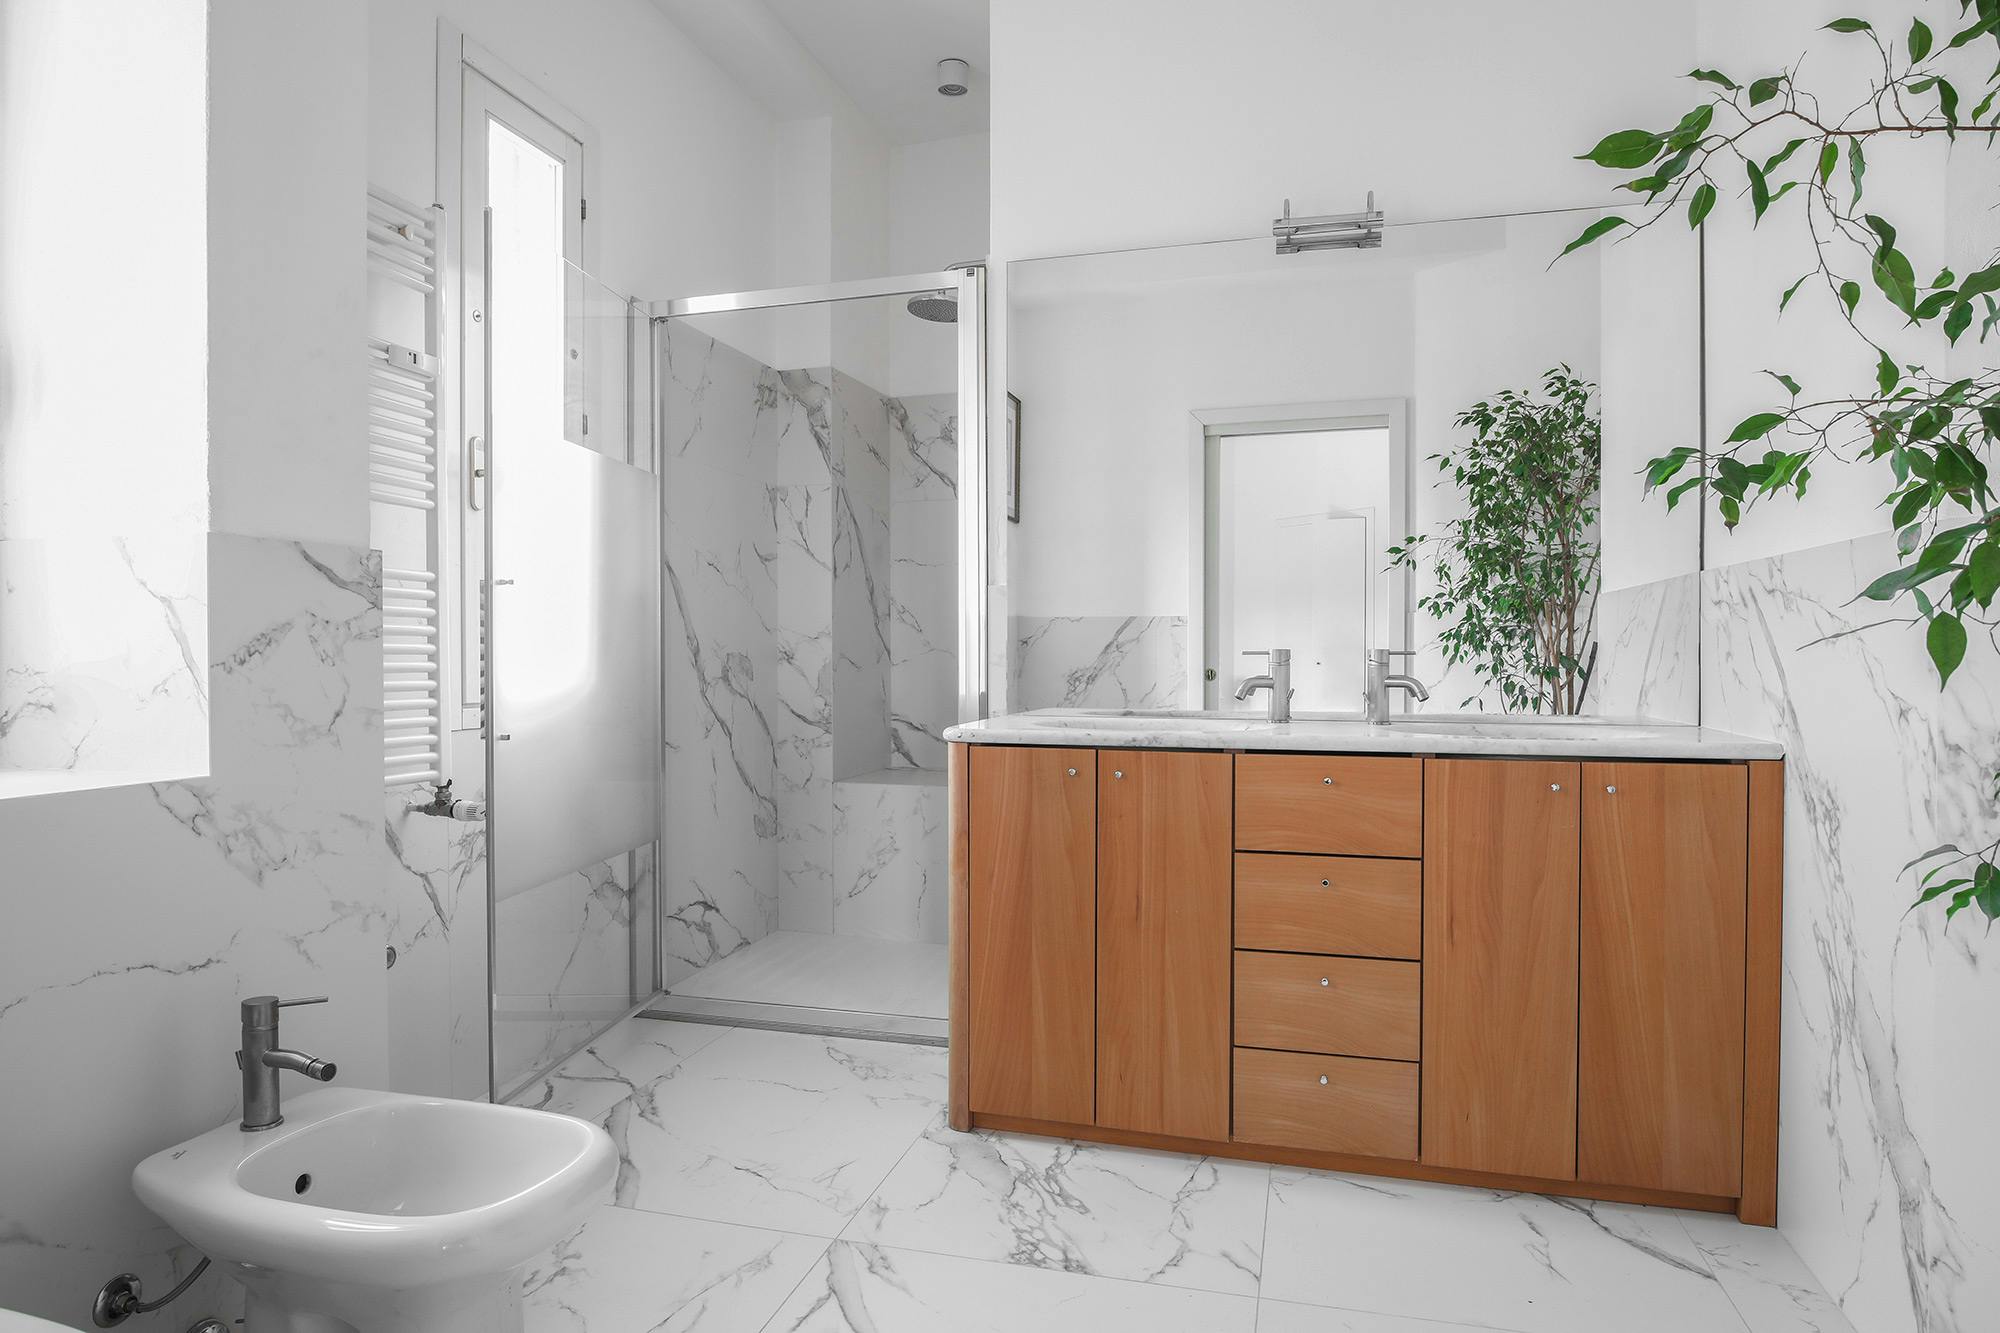 Imagem número 33 da actual secção de A private bathroom in Milan with a spacious, sturdy and elegant look thanks to Dekton  da Cosentino Portugal